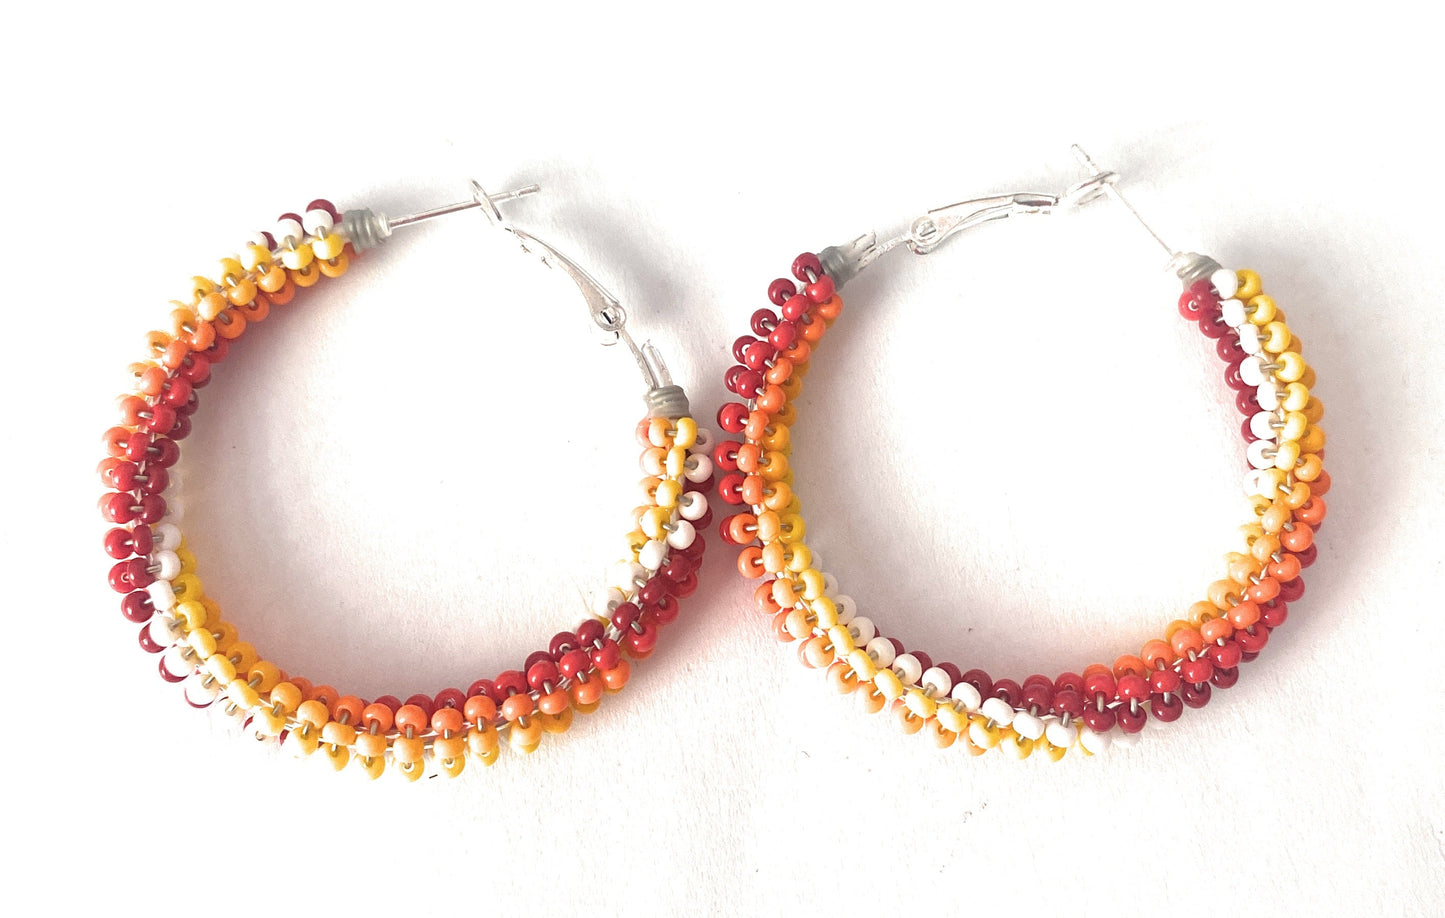 Navajo Handmade Beaded Hoop Earrings- red, yellow, orange